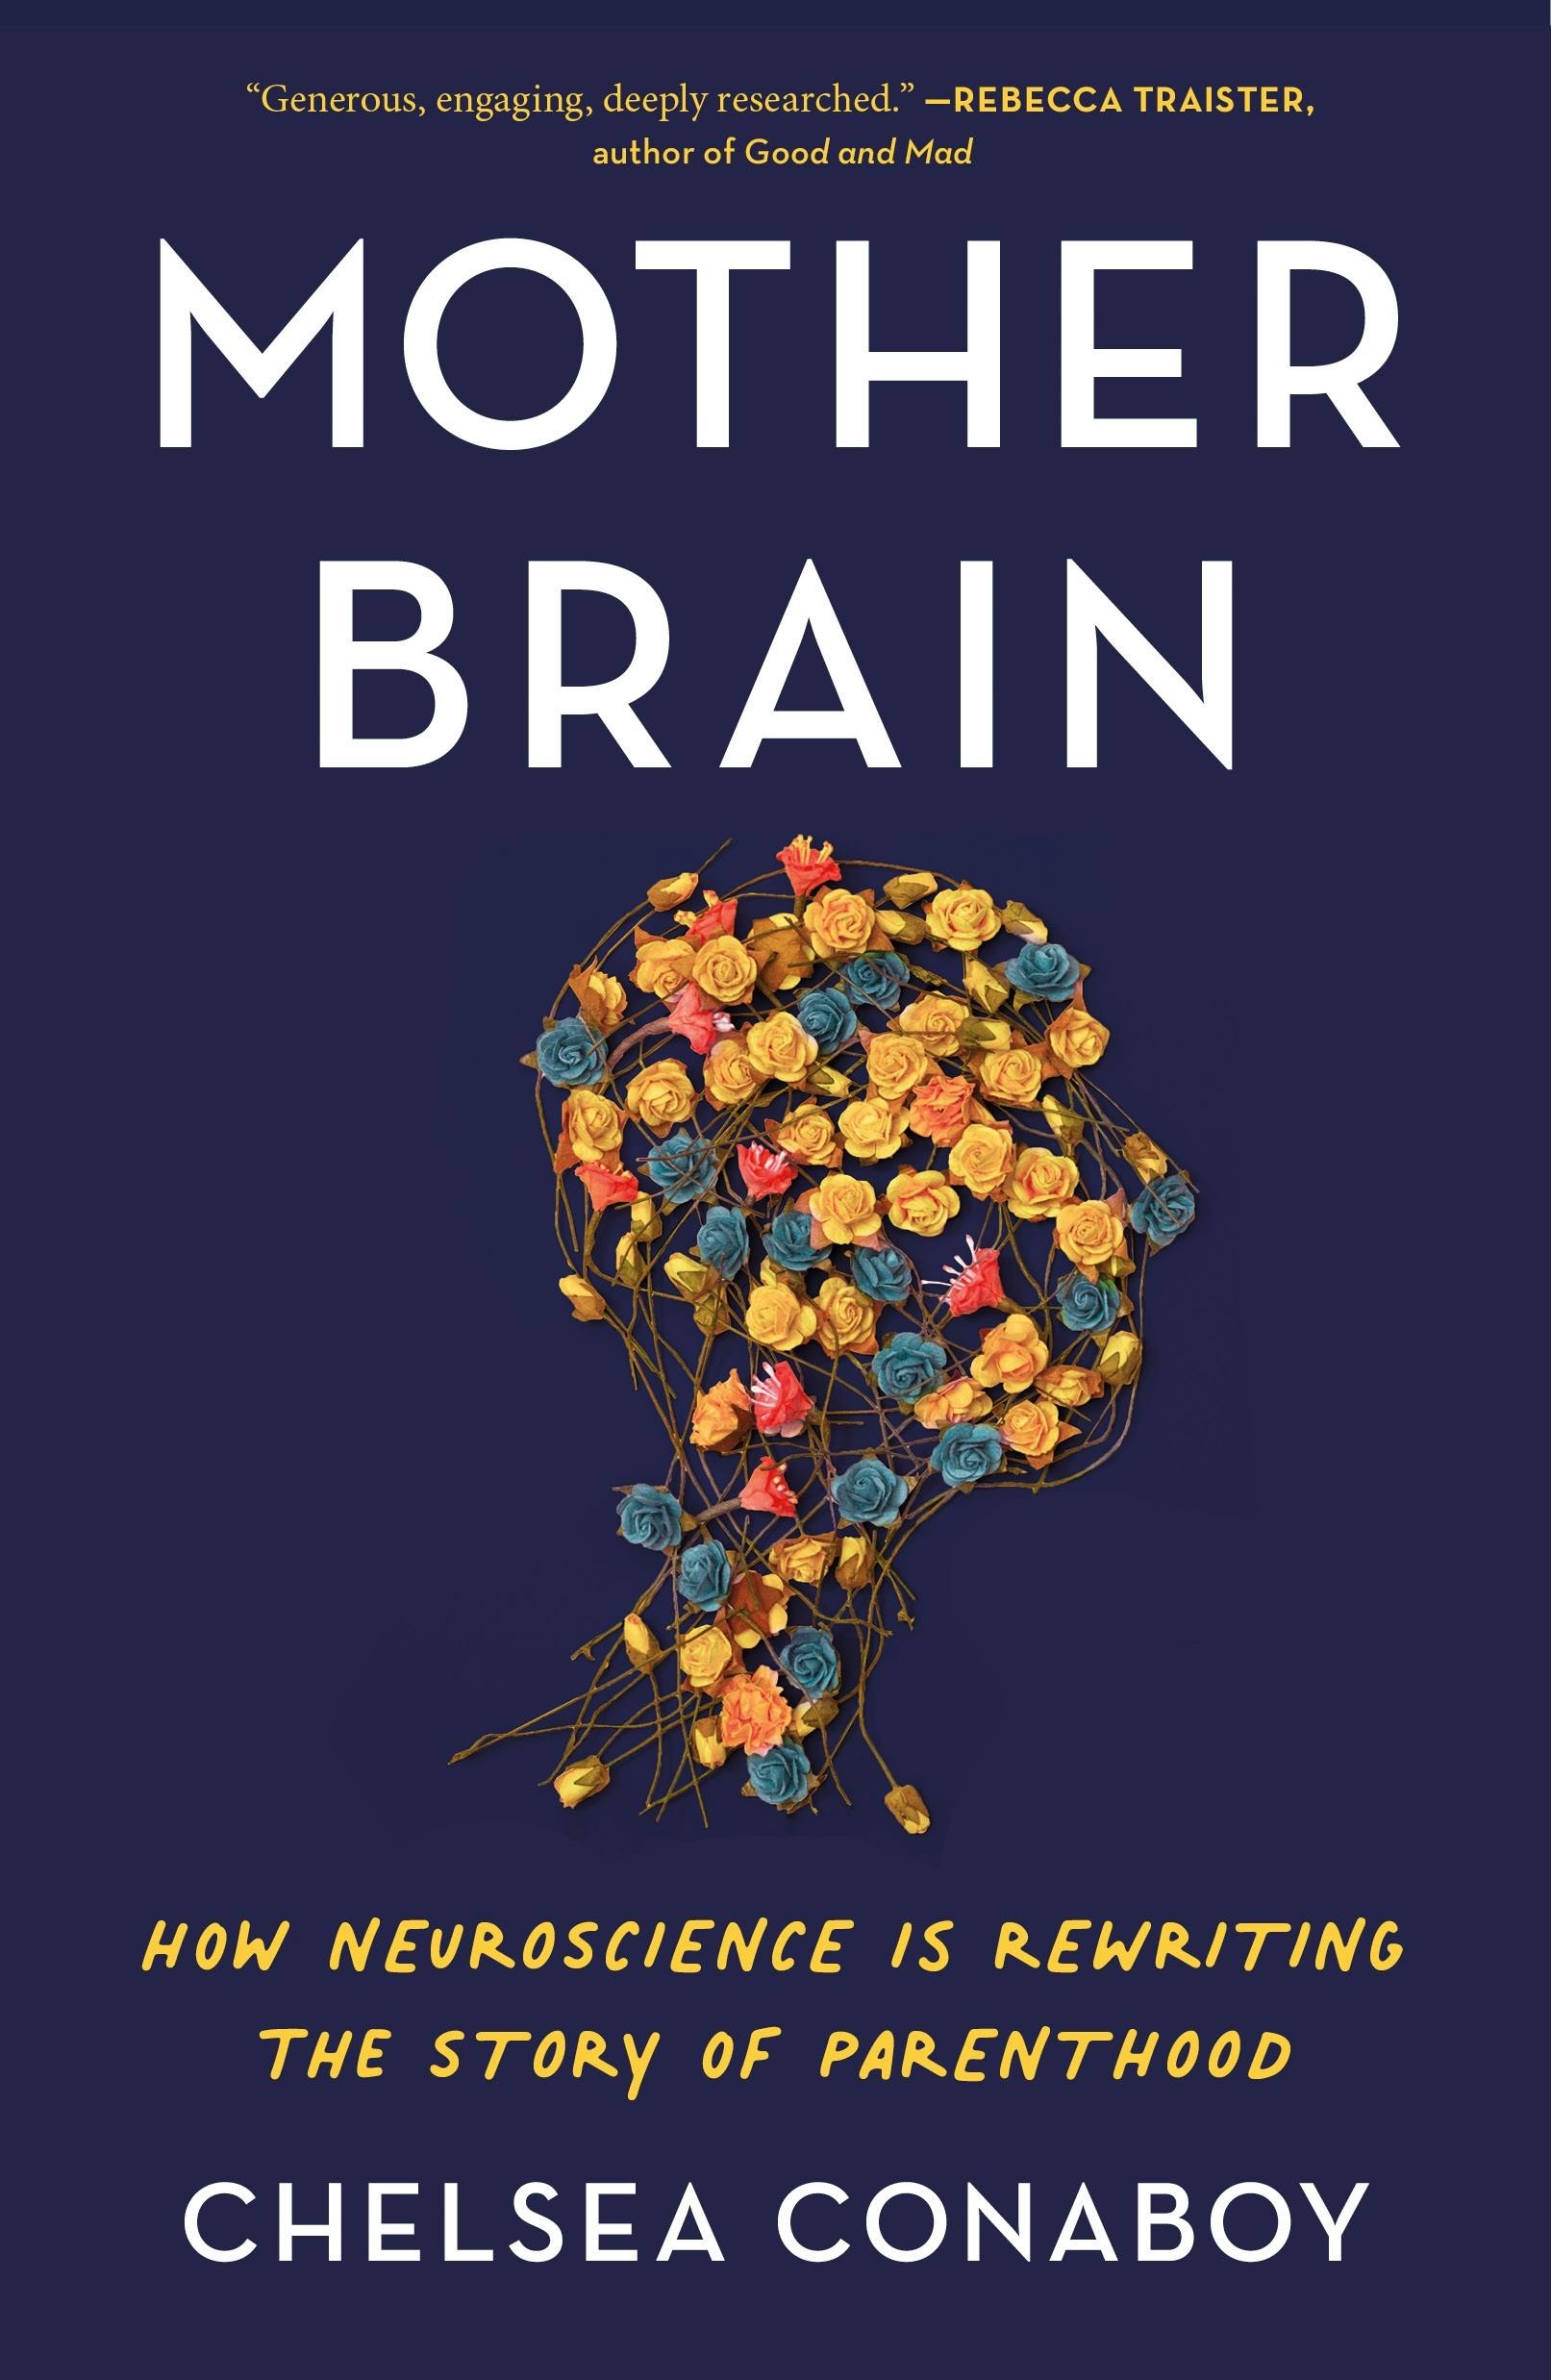 Human Brain Development: Growth After Birth Challenges Previous Assumptions  - Neuroscience News